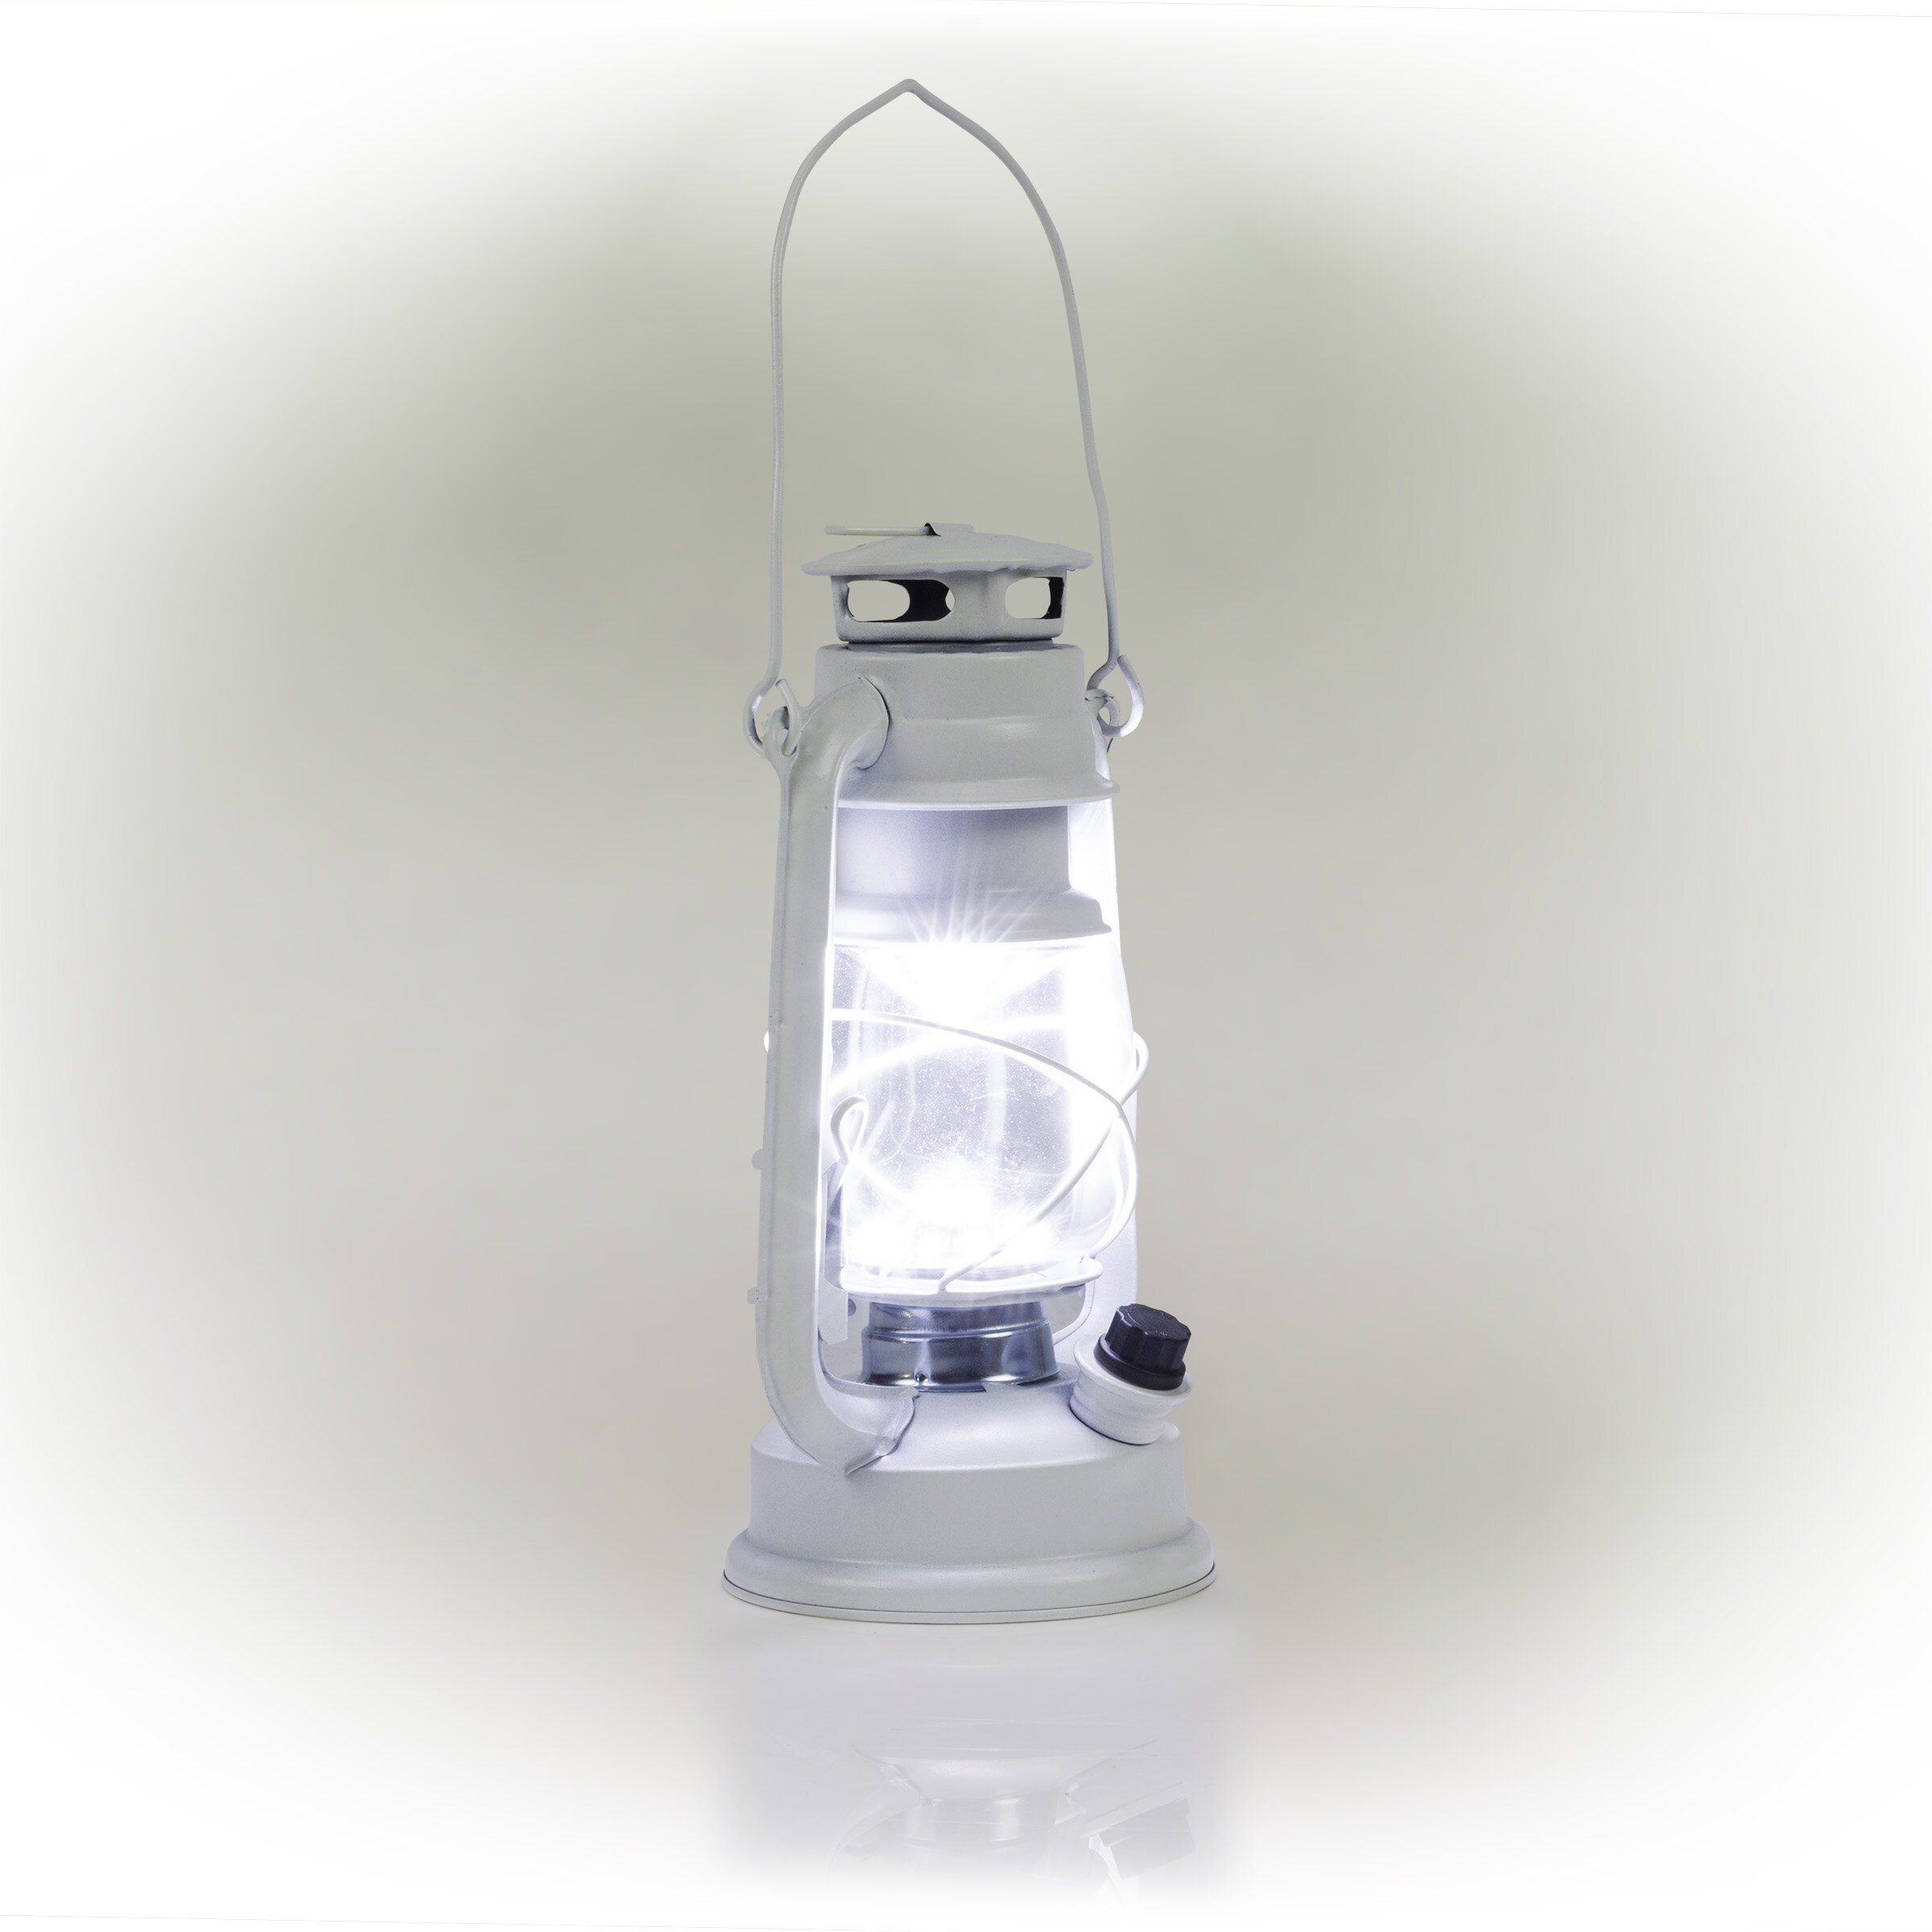 https://assets.wfcdn.com/im/20112863/compr-r85/1491/149188716/10-battery-powered-outdoor-lantern.jpg